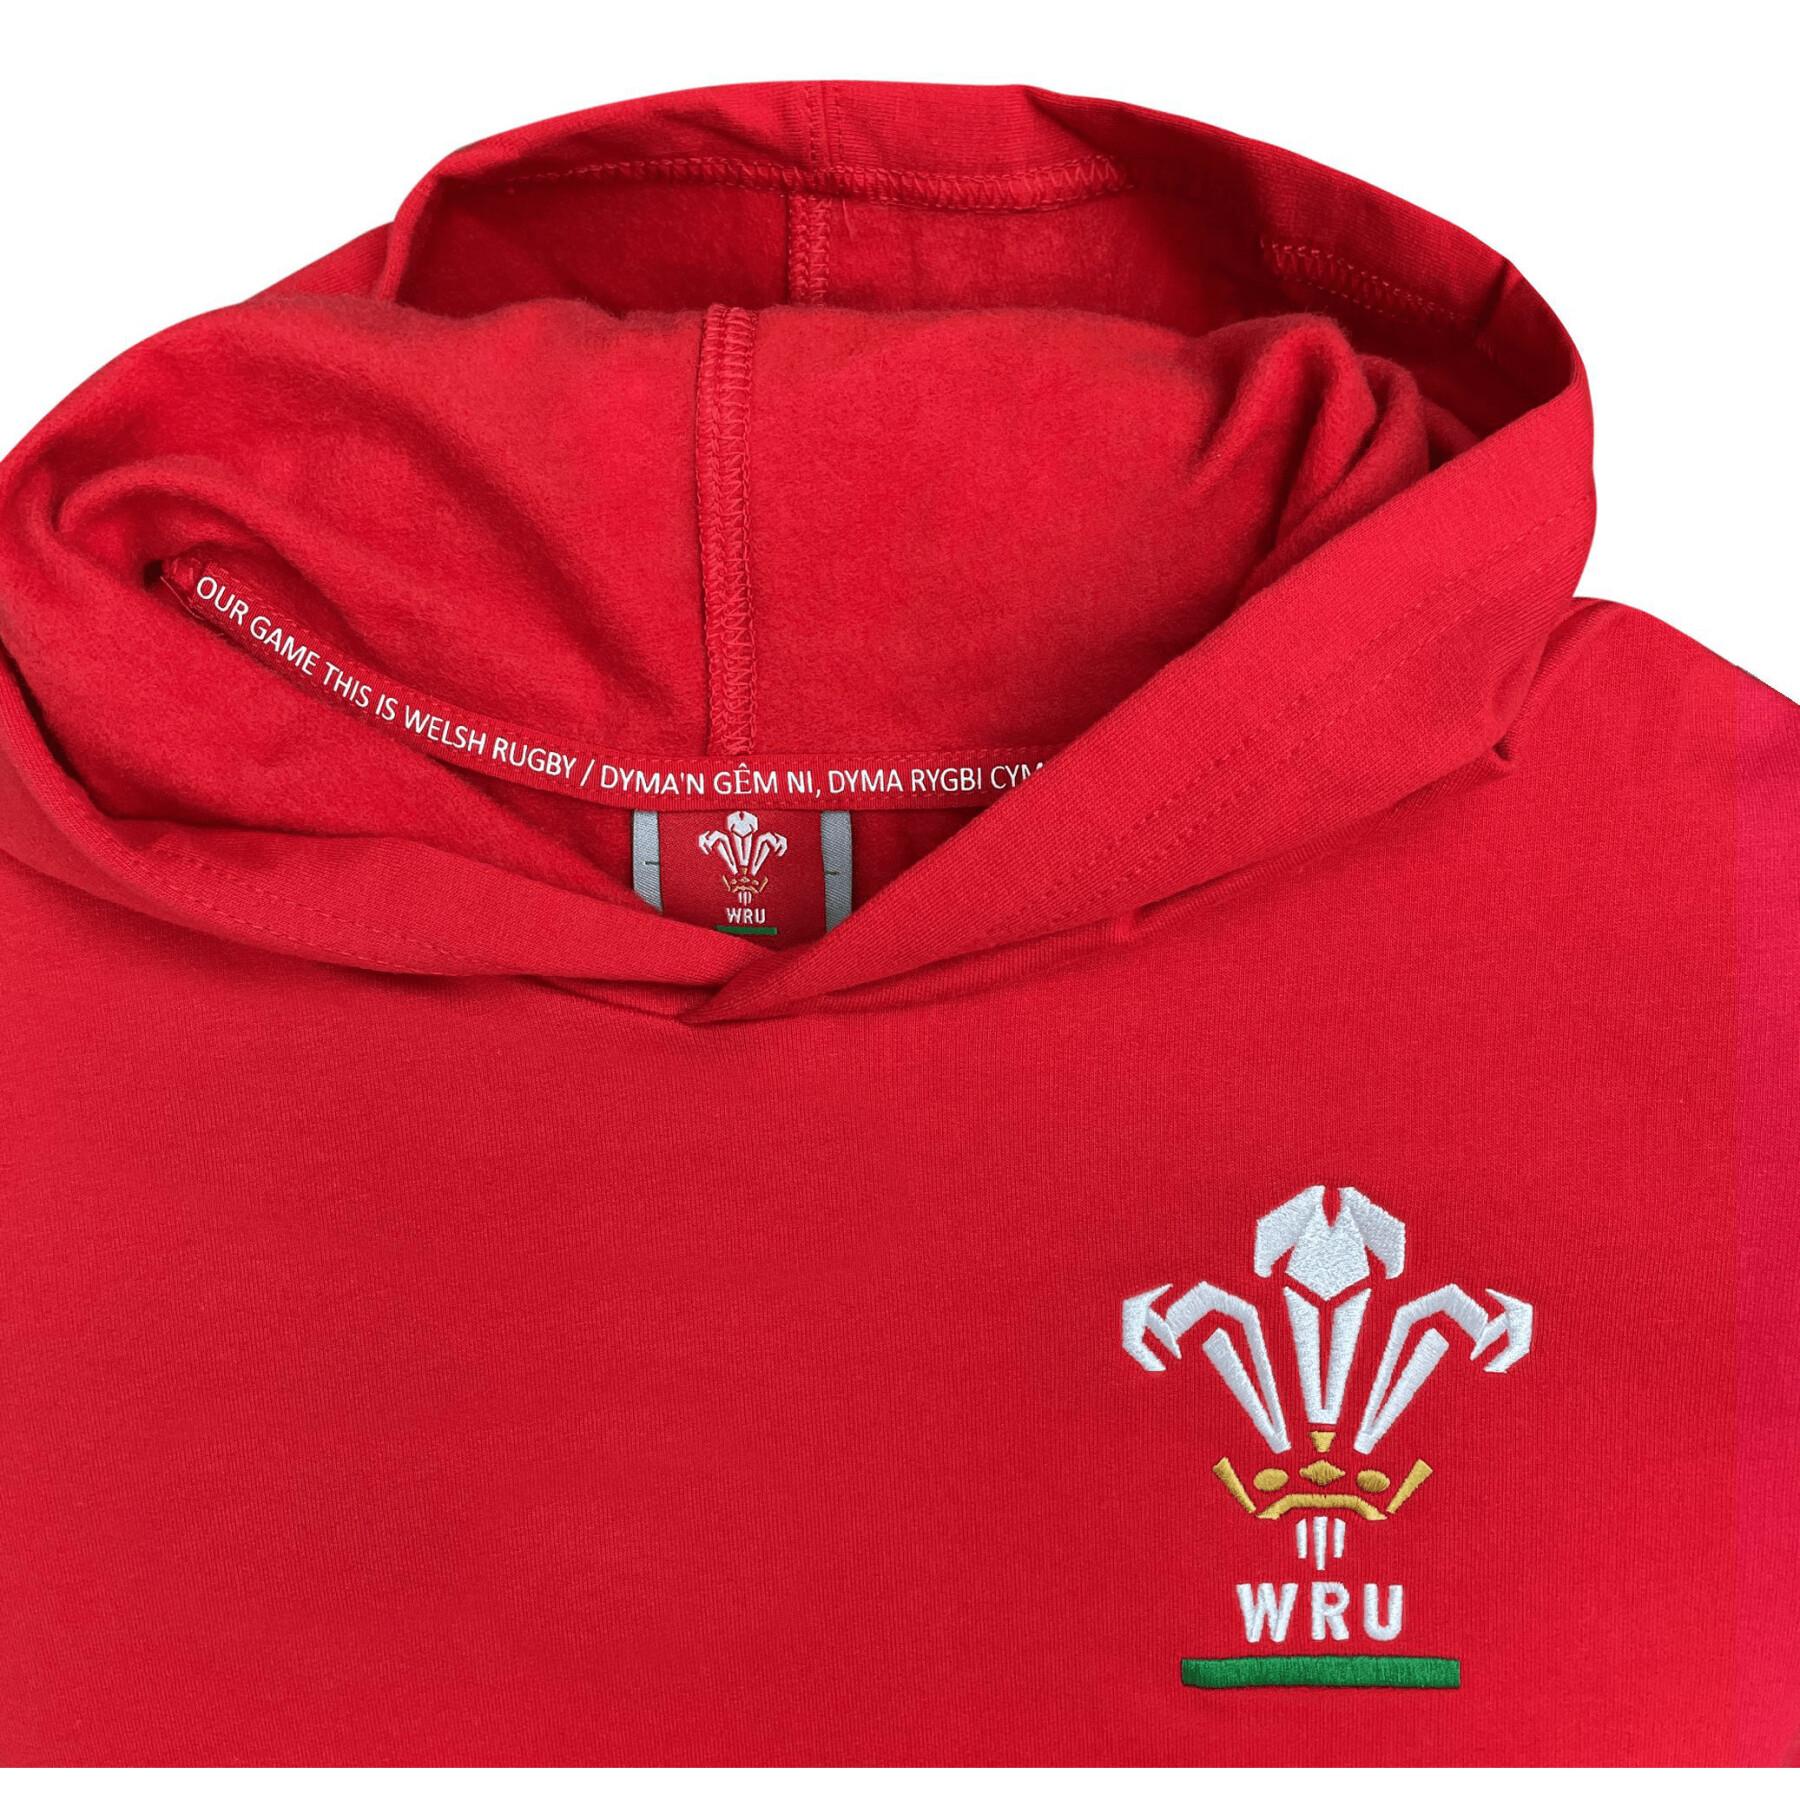 Hoodie Wales Rugby XV Merch CA Groc